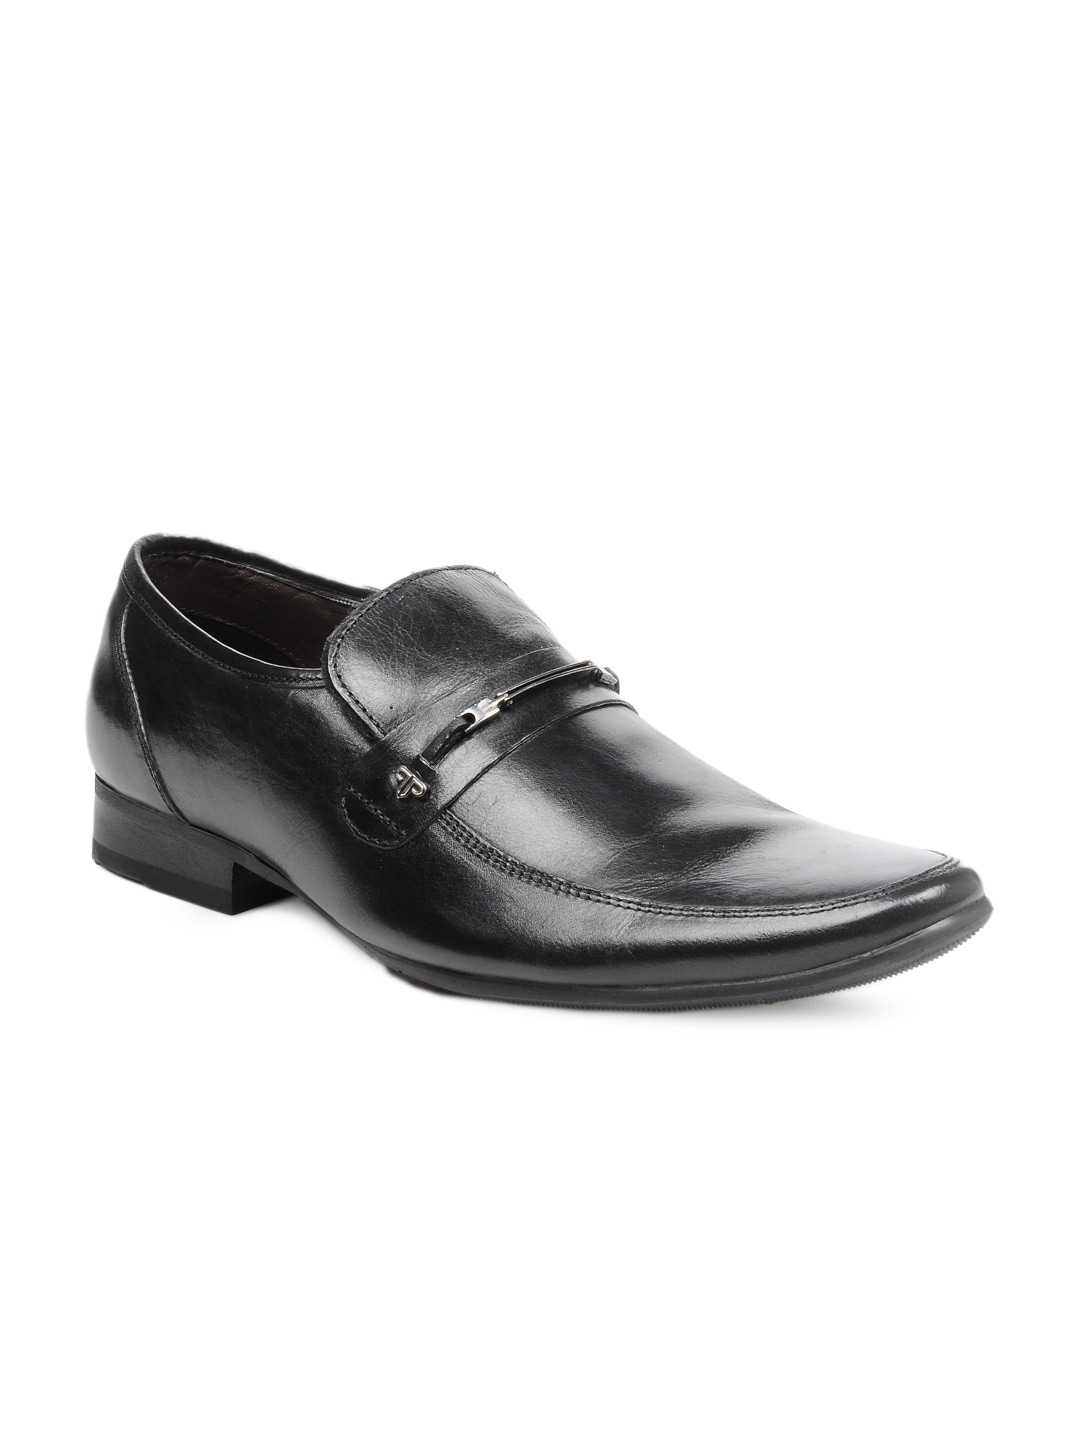 Provogue Men Black Casual Shoes